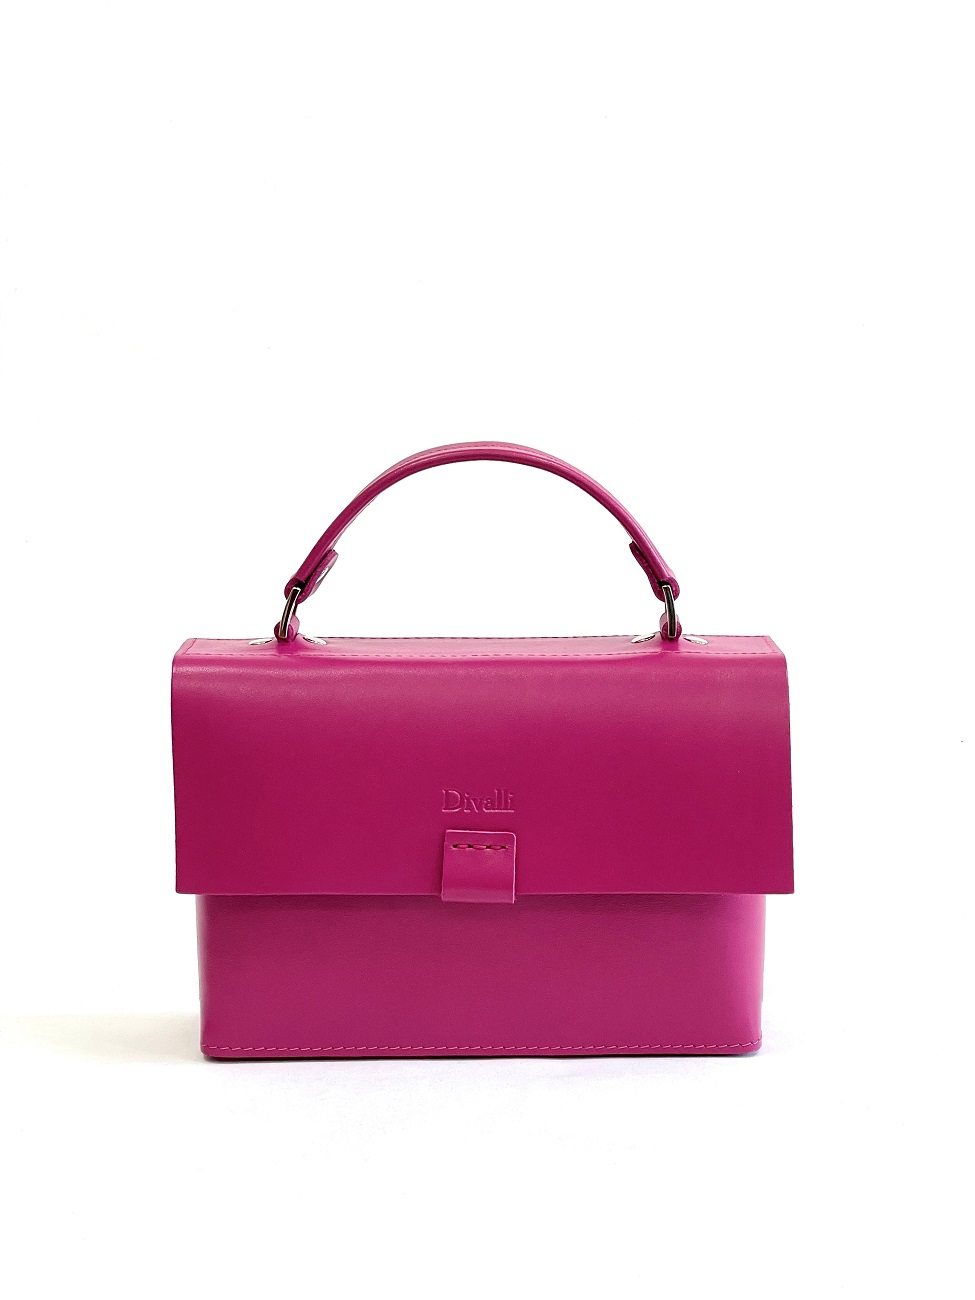 Женская кожаная сумка с ручкой розовая A037 fuchsia